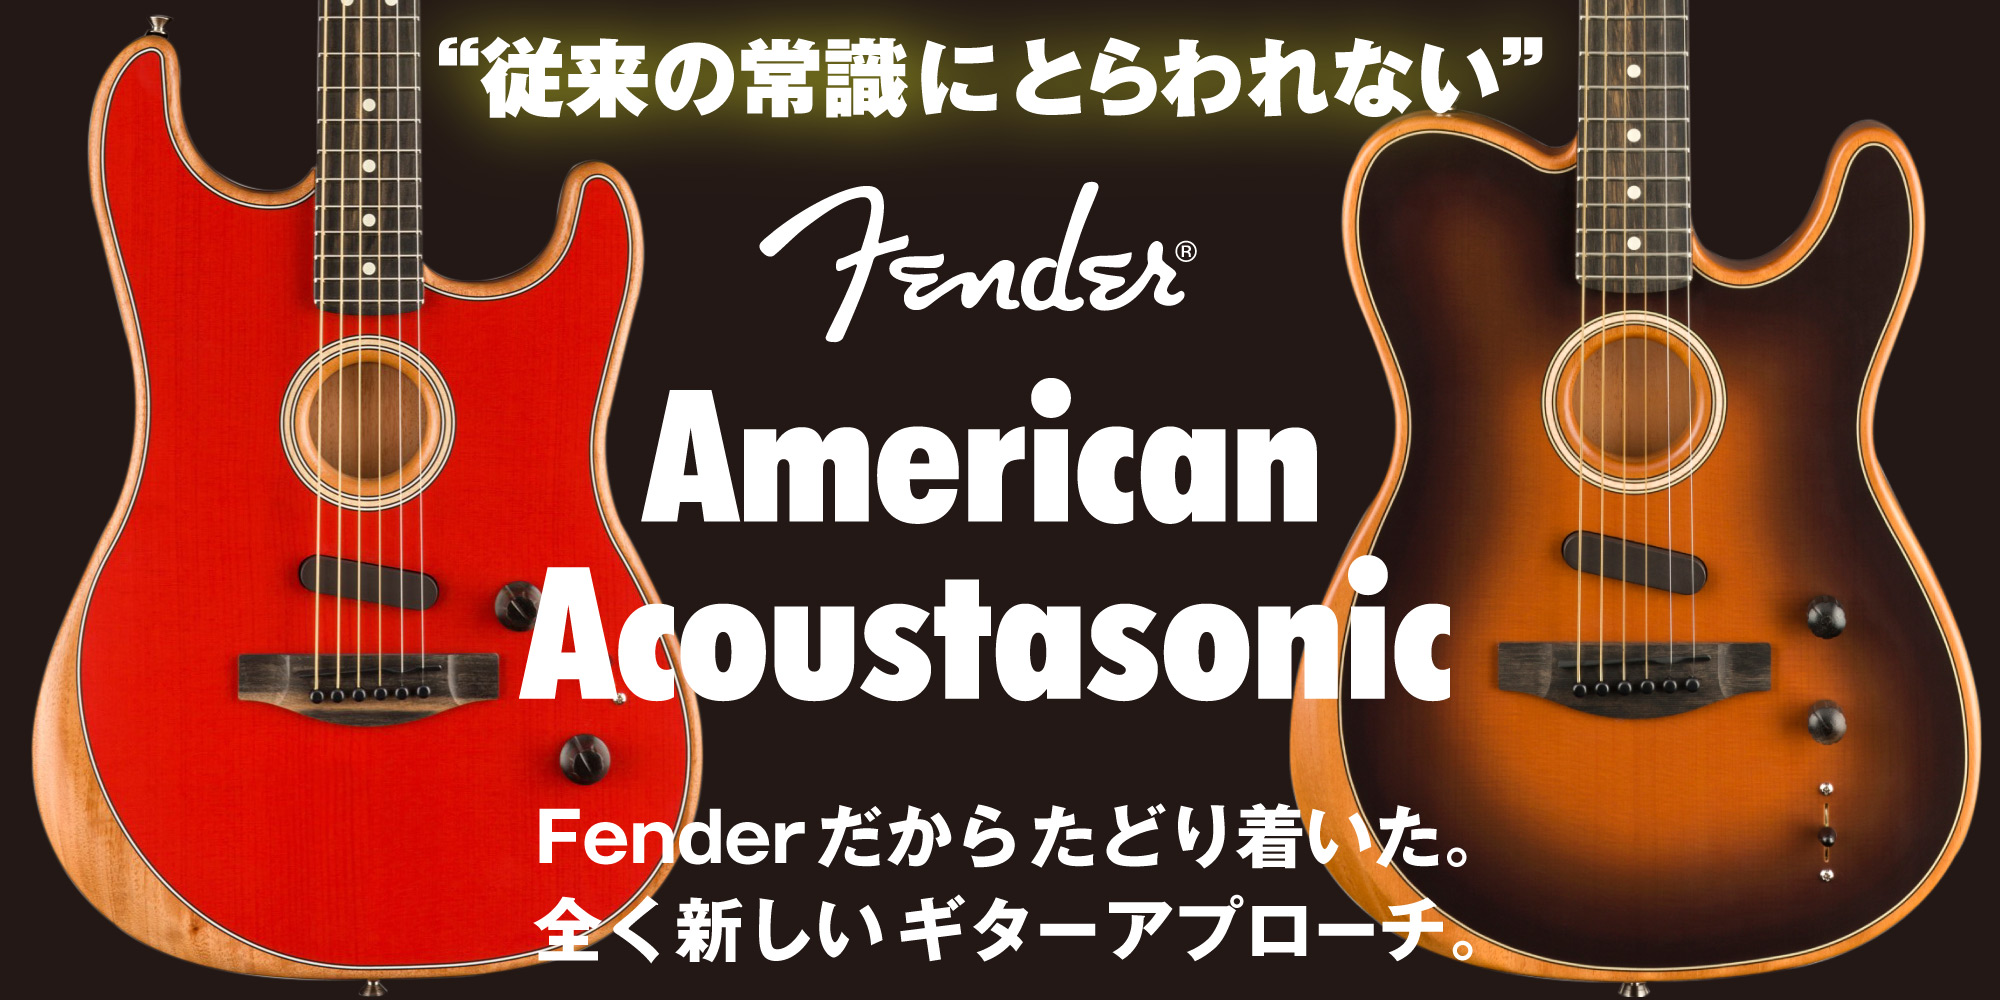 FenderAmerica ACOUSTASONIC